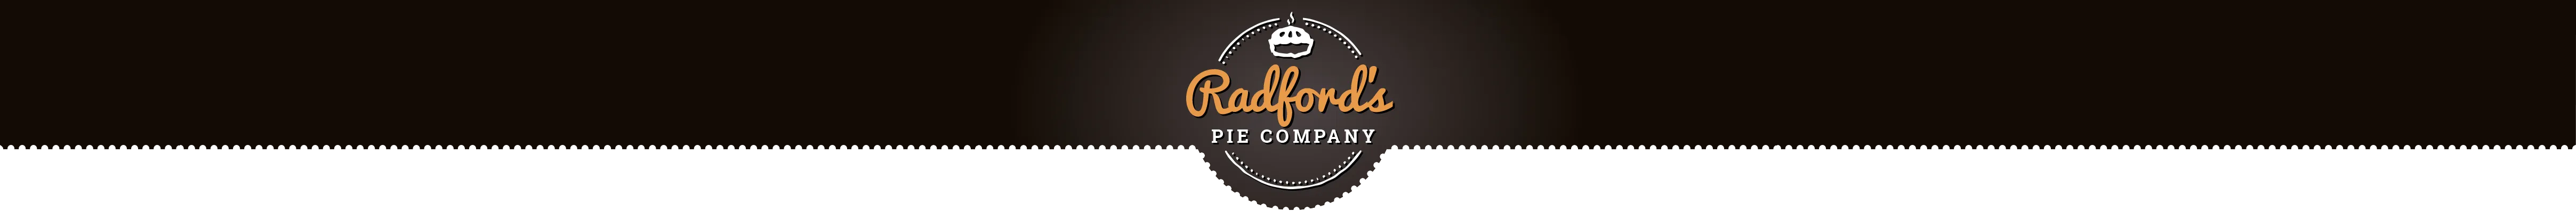  Radford's Pie Company Promo Code